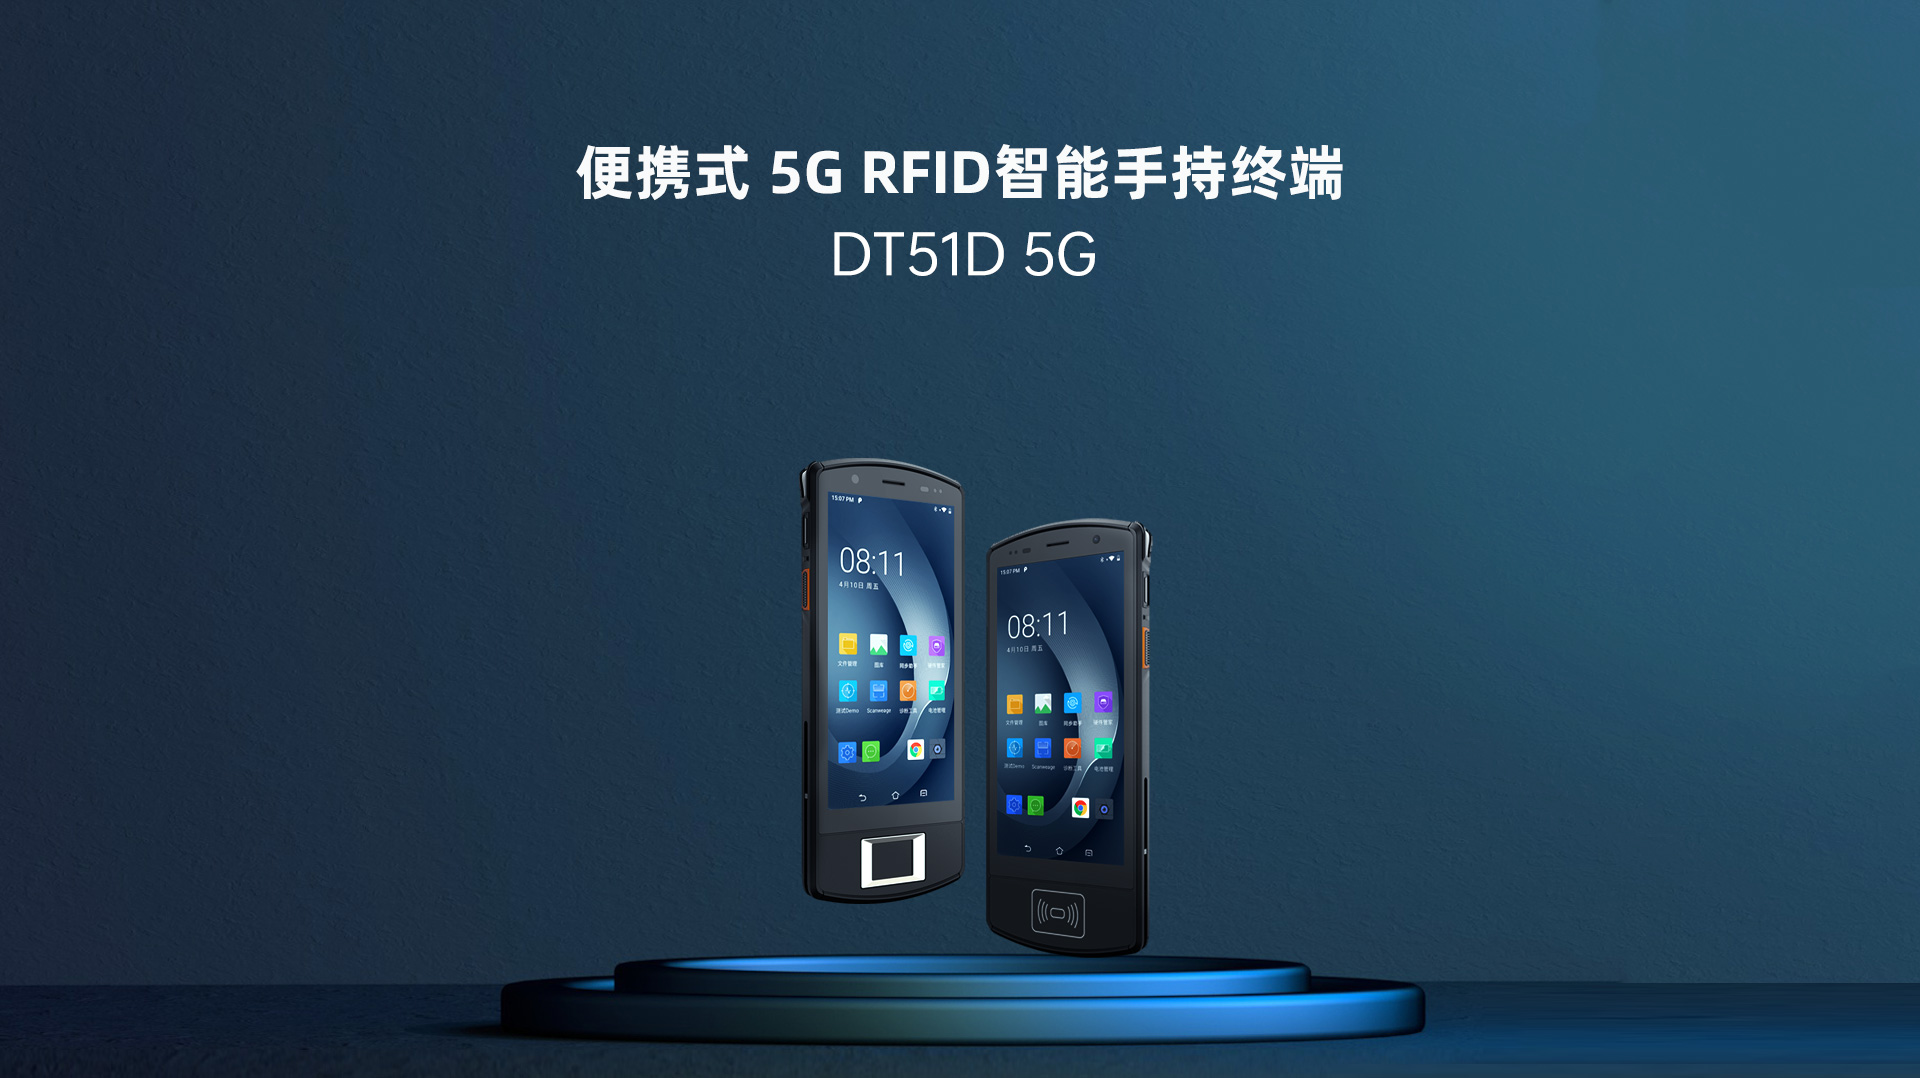 168体育便携式 5G RFID智能手持终端DT51D 5G  